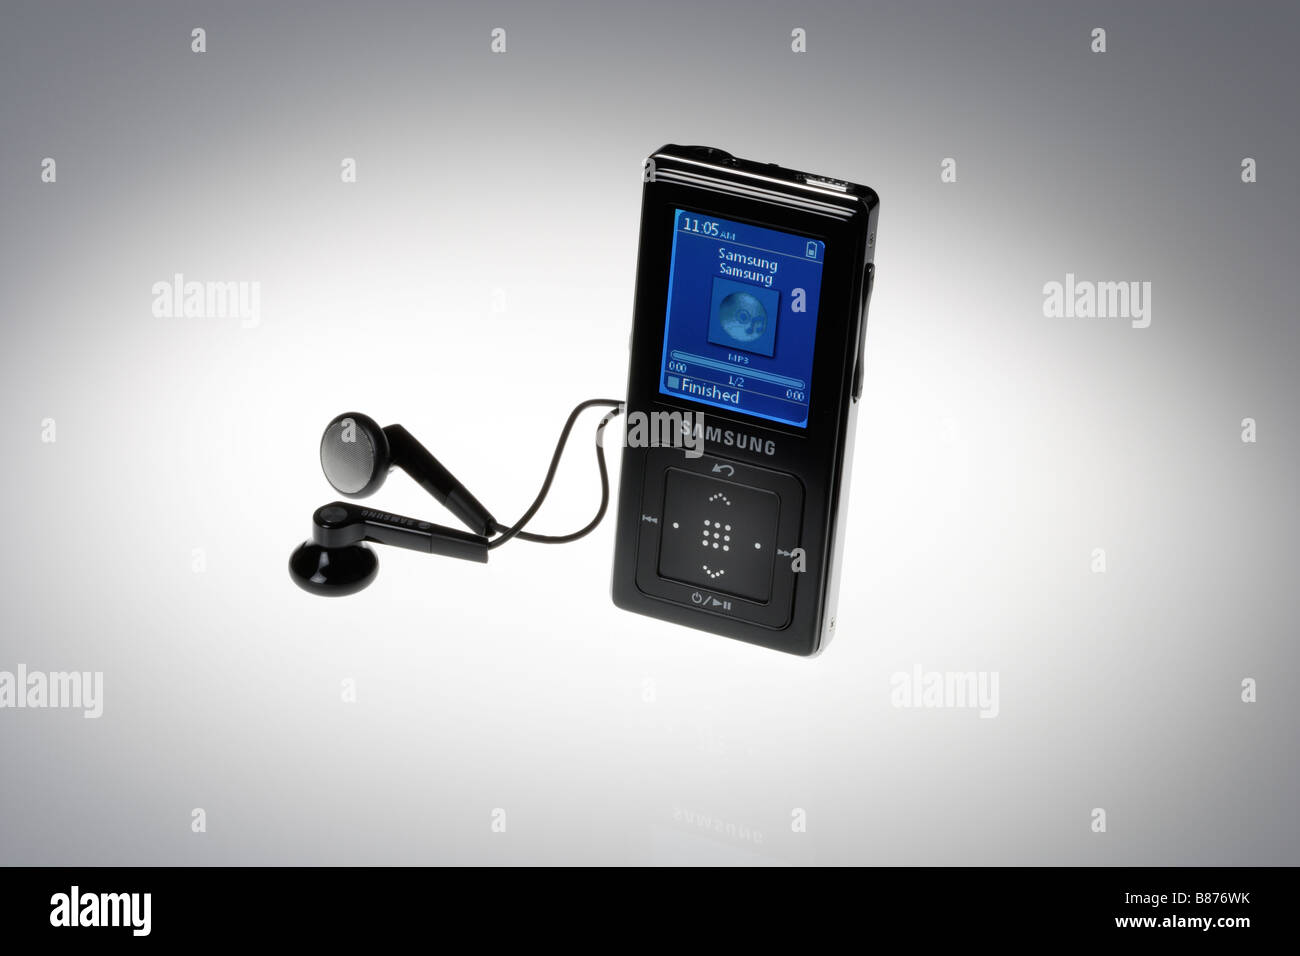 Samsung mp3 player immagini e fotografie stock ad alta risoluzione - Alamy